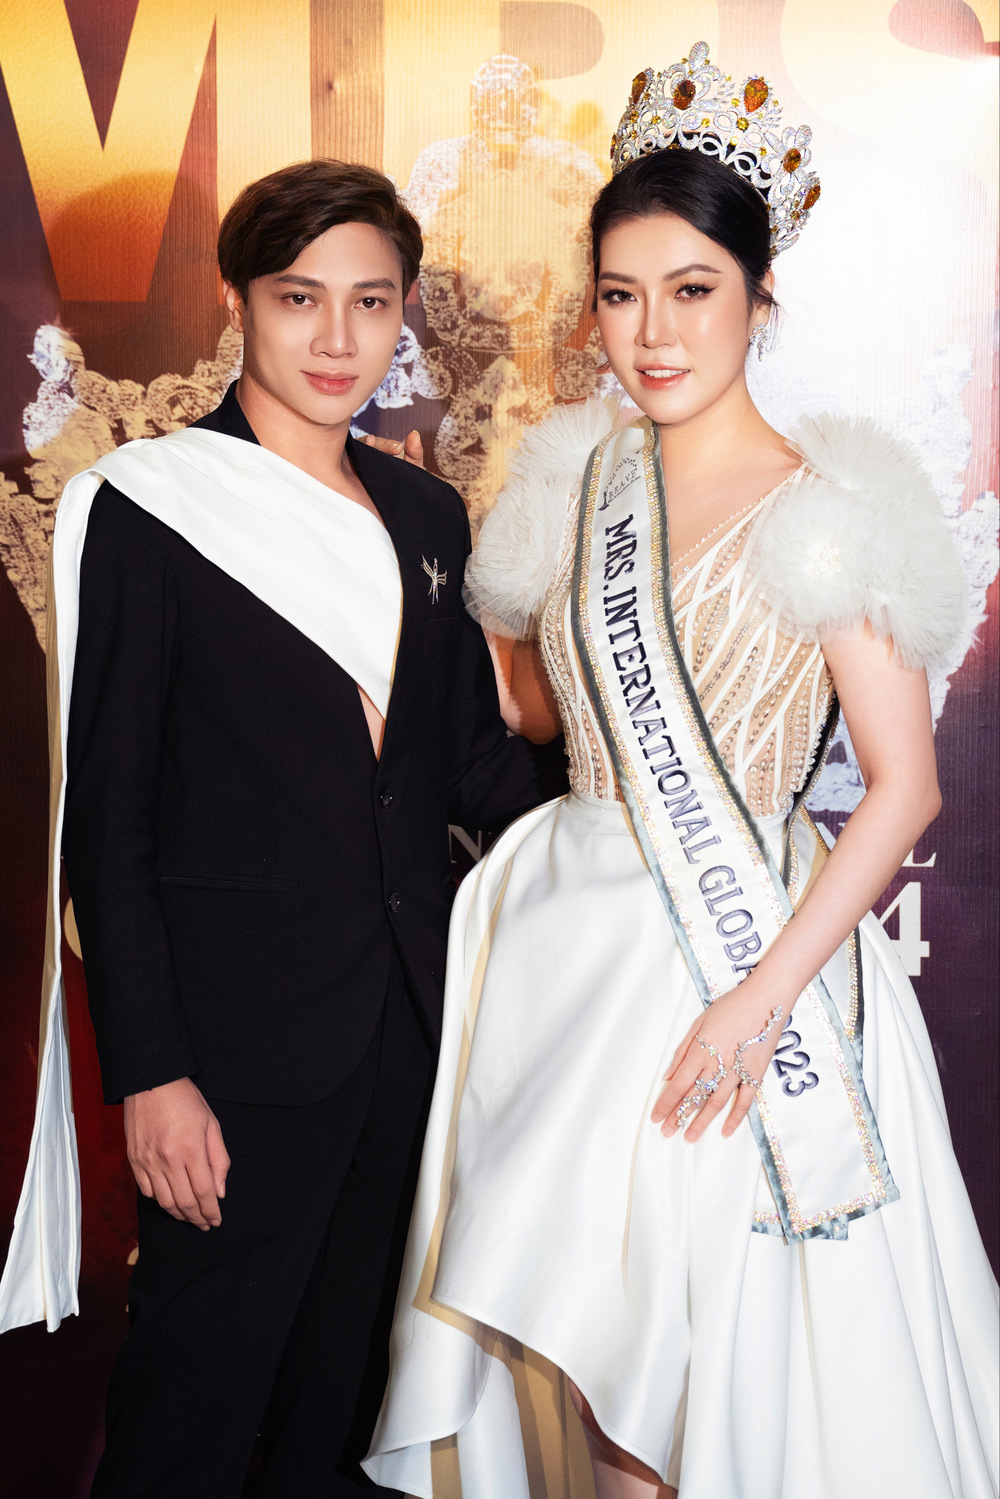 Hoa hậu Trần Hà Trâm Anh, CEO Vũ Thái “xuất khẩu” đầu năm sang Mã Lai để chấm thi - Ảnh 10.